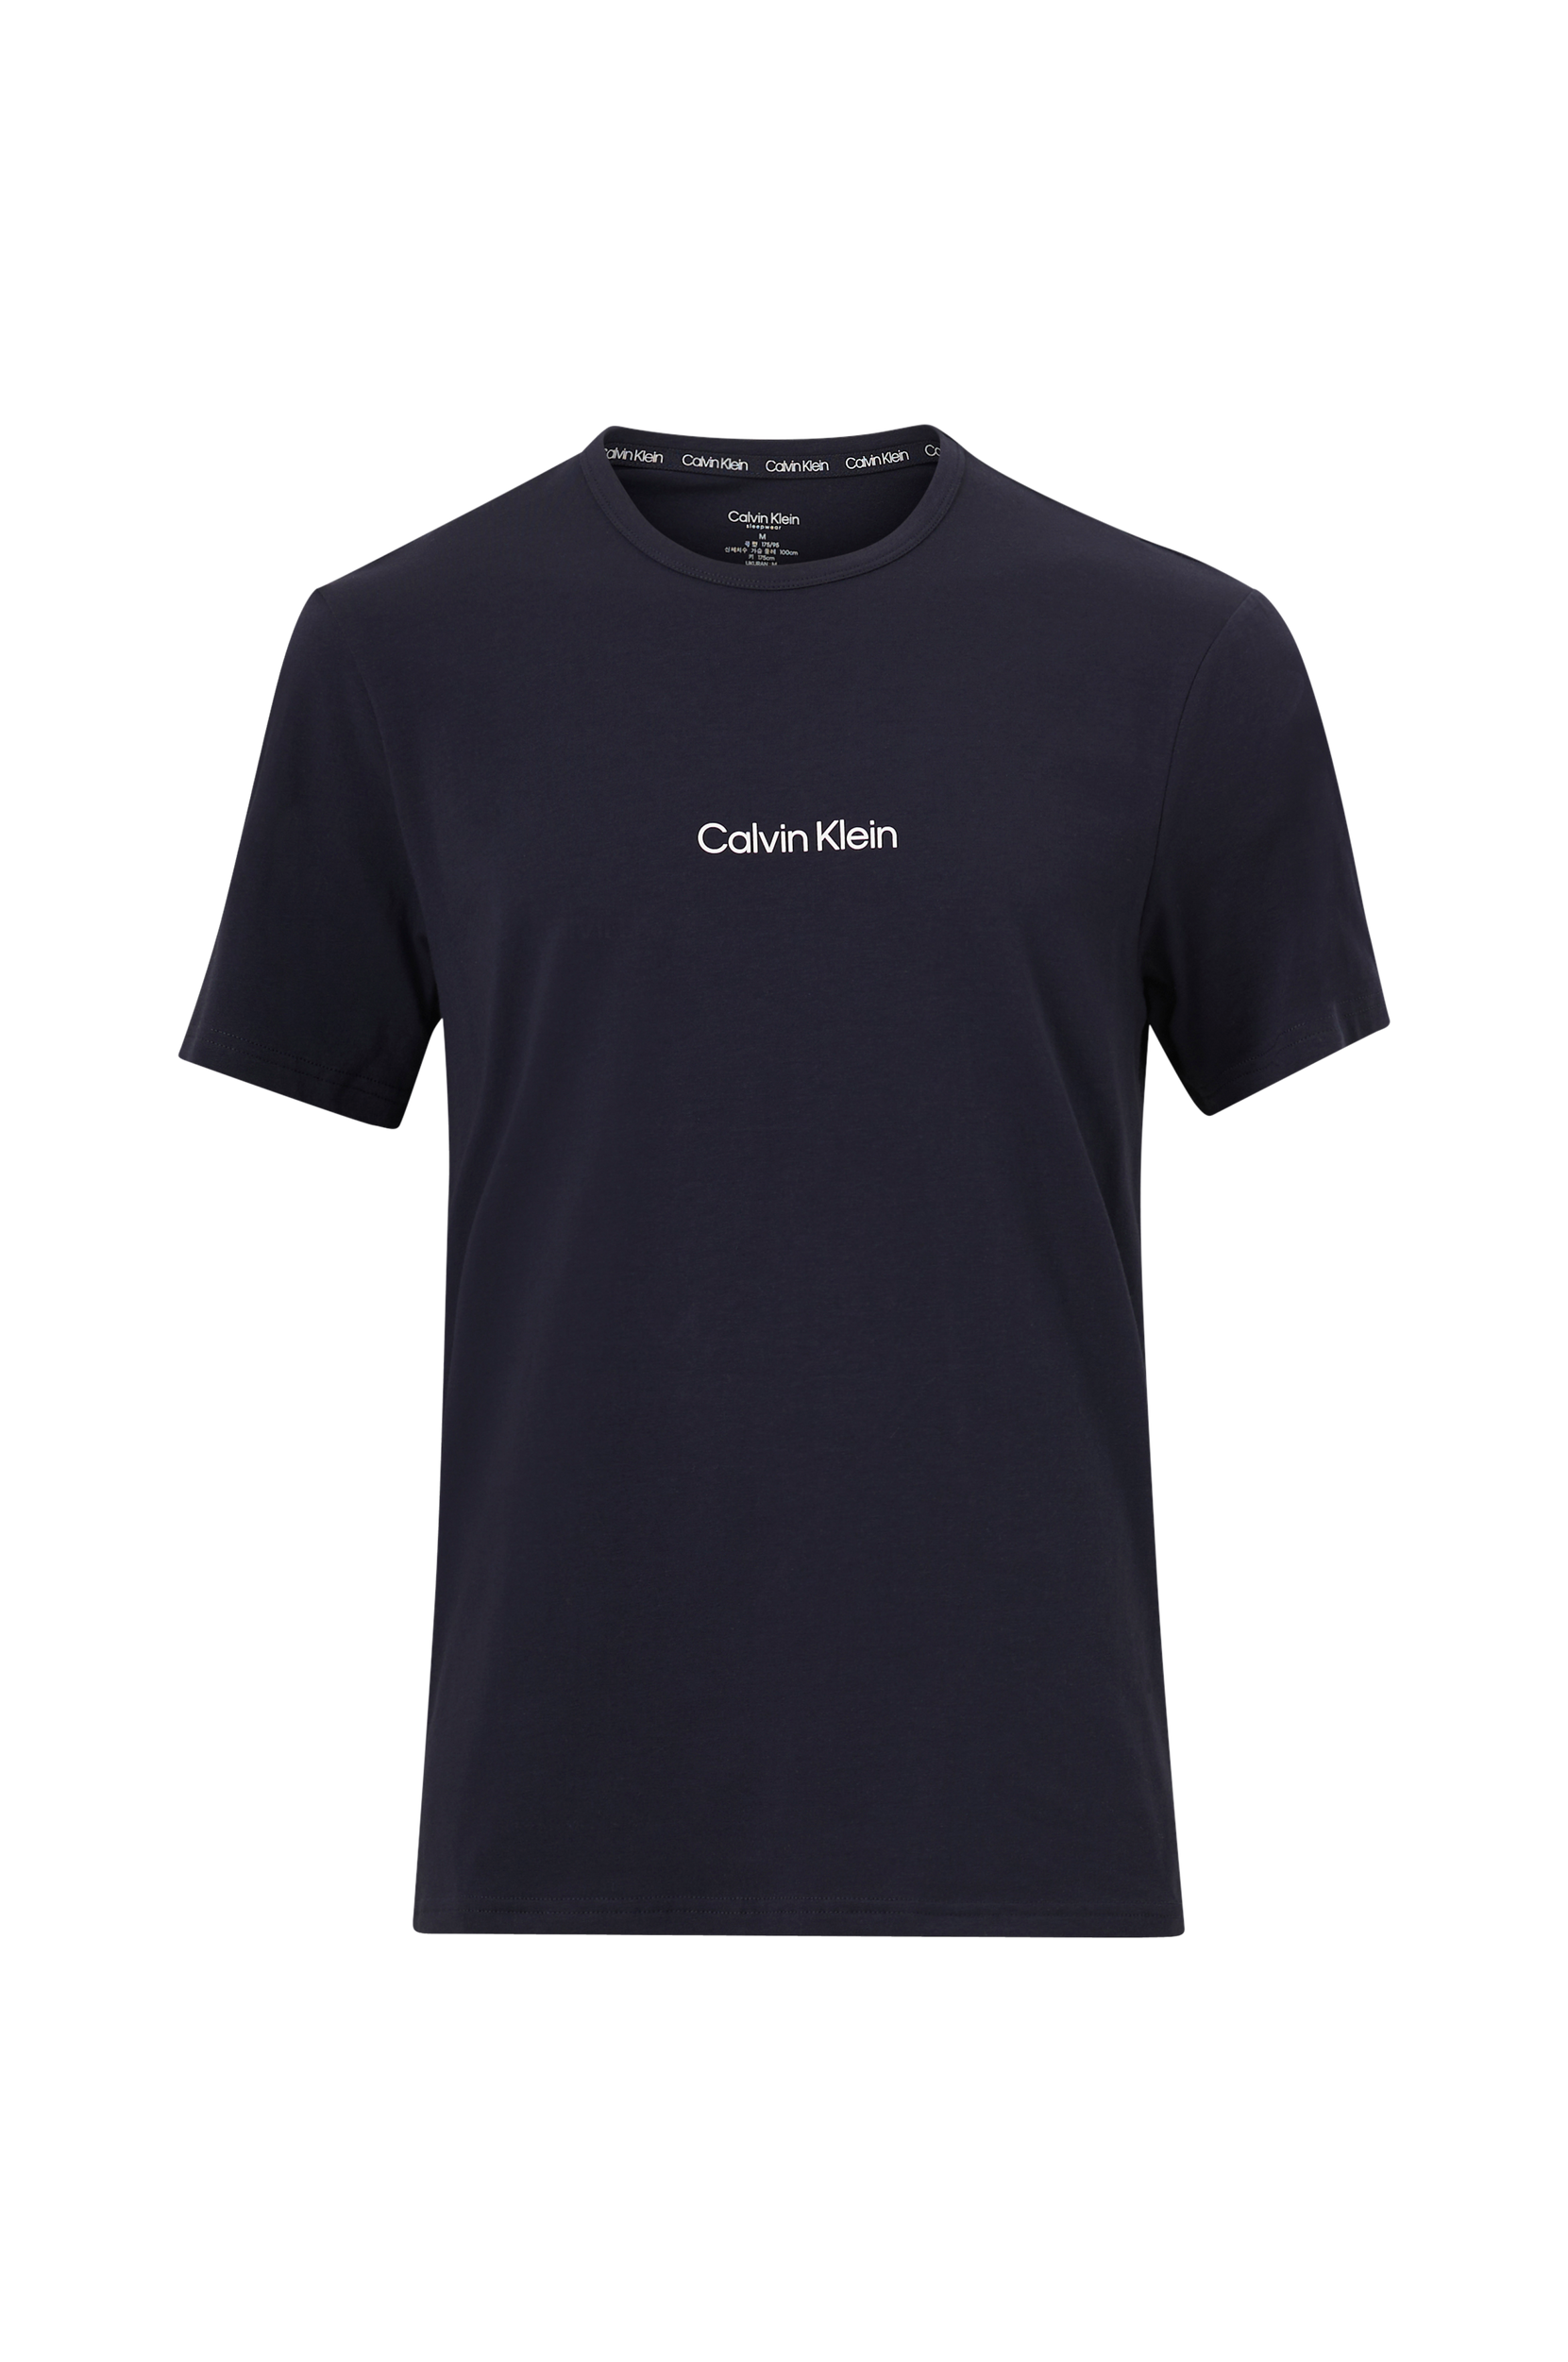 Calvin Klein - T-shirt S/S Crew Neck - Blå - M